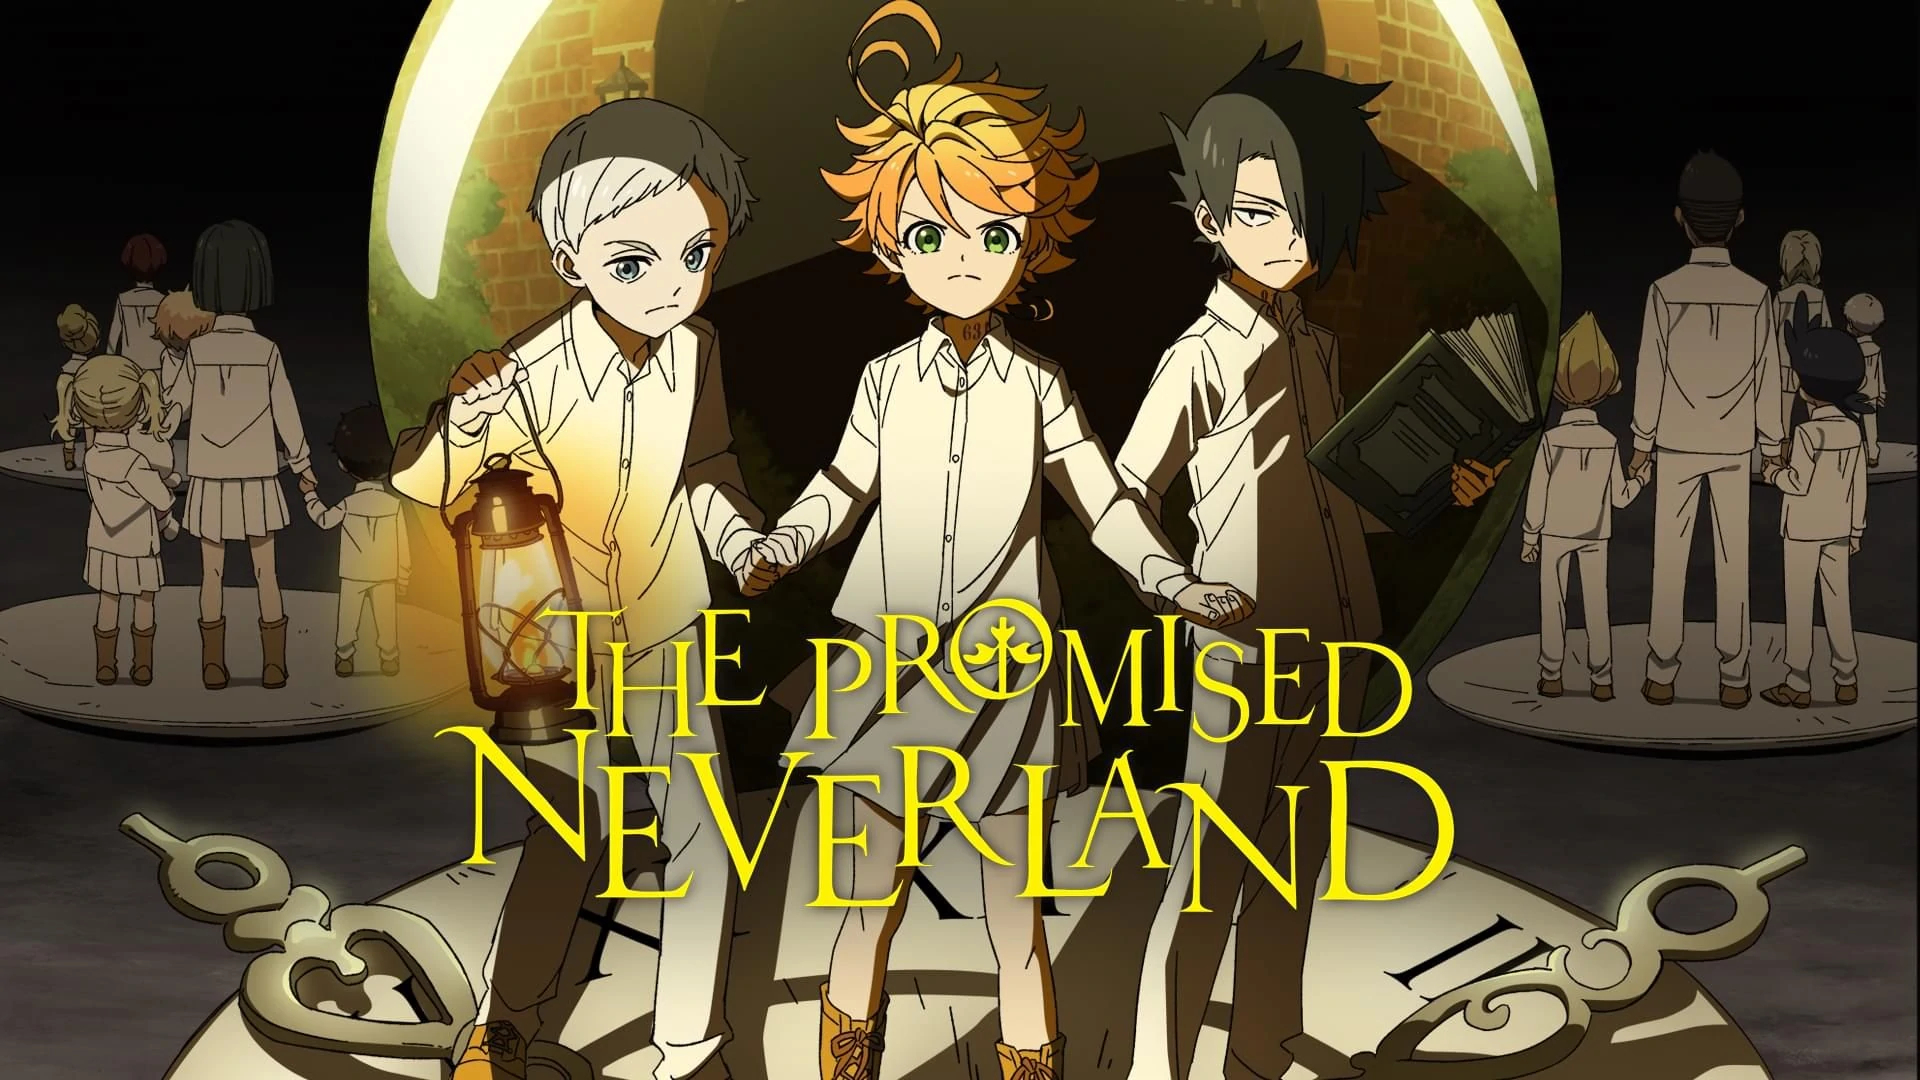 1920x1080 The Promised Neverland | Toonami Wiki | Fandom